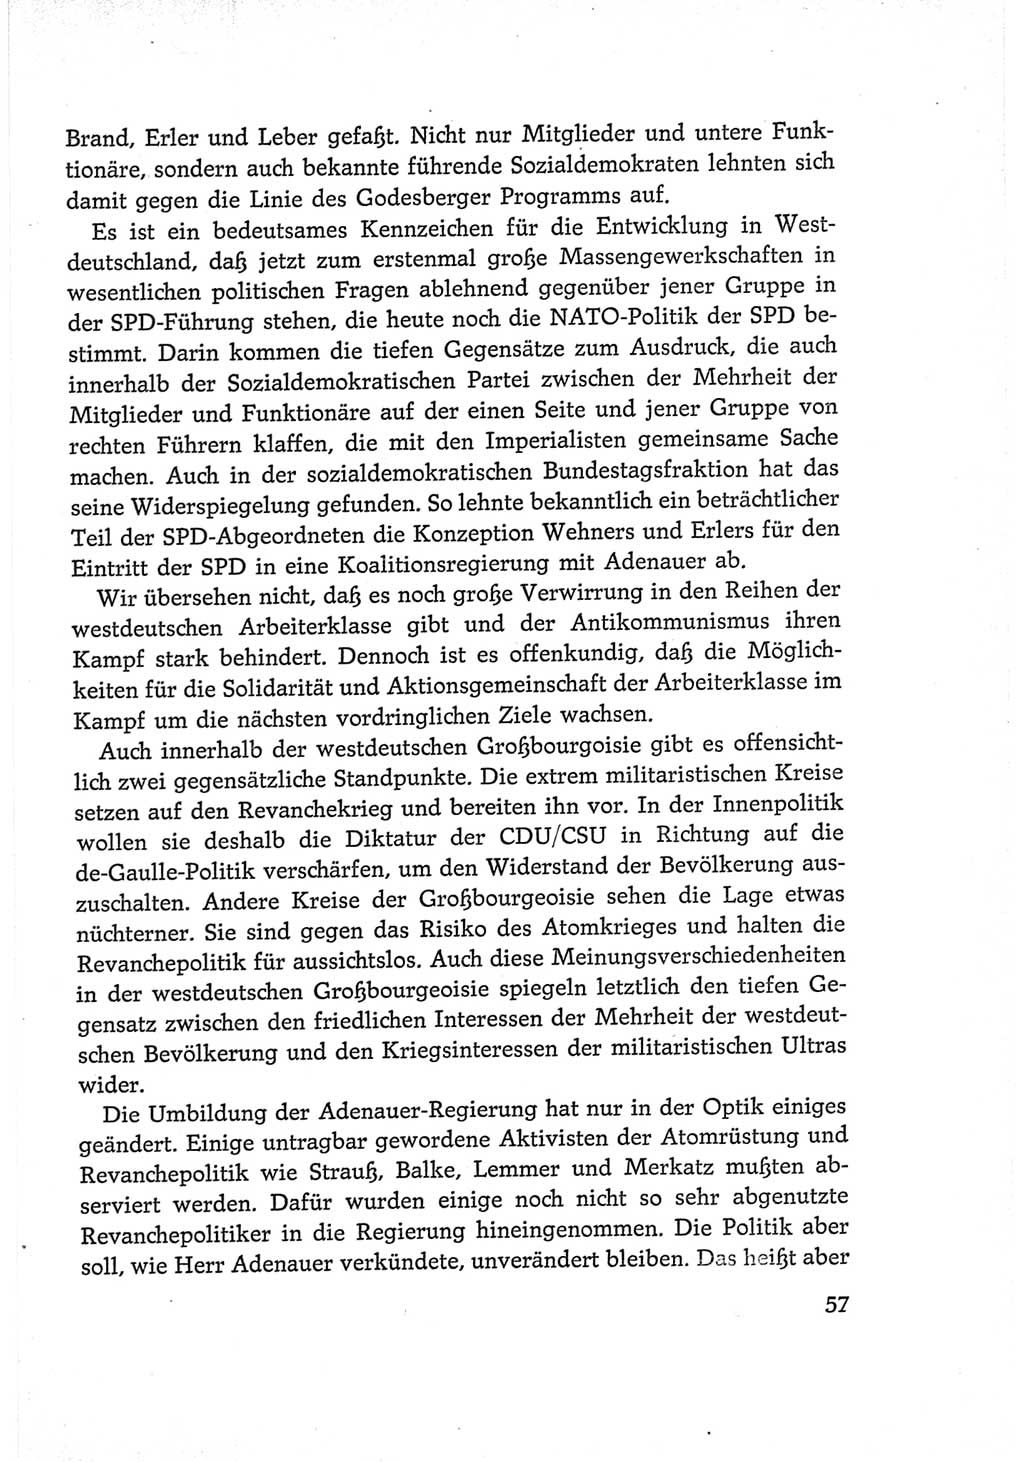 Protokoll der Verhandlungen des Ⅵ. Parteitages der Sozialistischen Einheitspartei Deutschlands (SED) [Deutsche Demokratische Republik (DDR)] 1963, Band Ⅰ, Seite 57 (Prot. Verh. Ⅵ. PT SED DDR 1963, Bd. Ⅰ, S. 57)